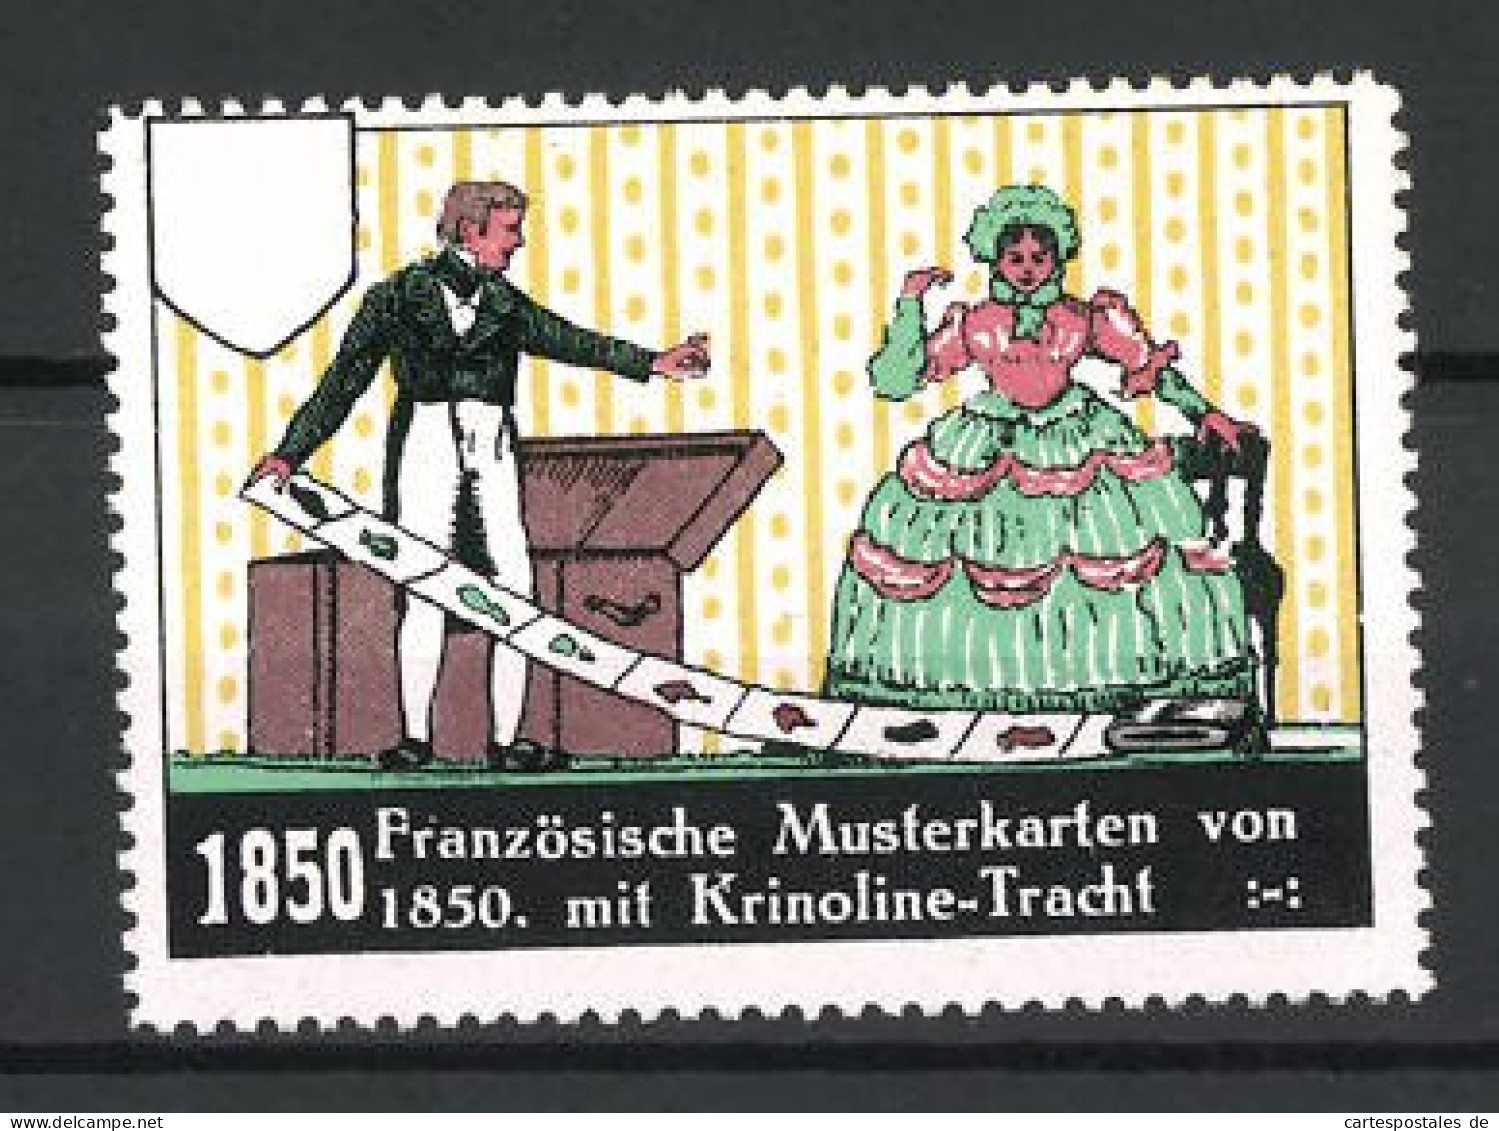 Reklamemarke Dame Und Herr In Krinoline-Tracht Um 1850, Französische Musterkarten  - Cinderellas